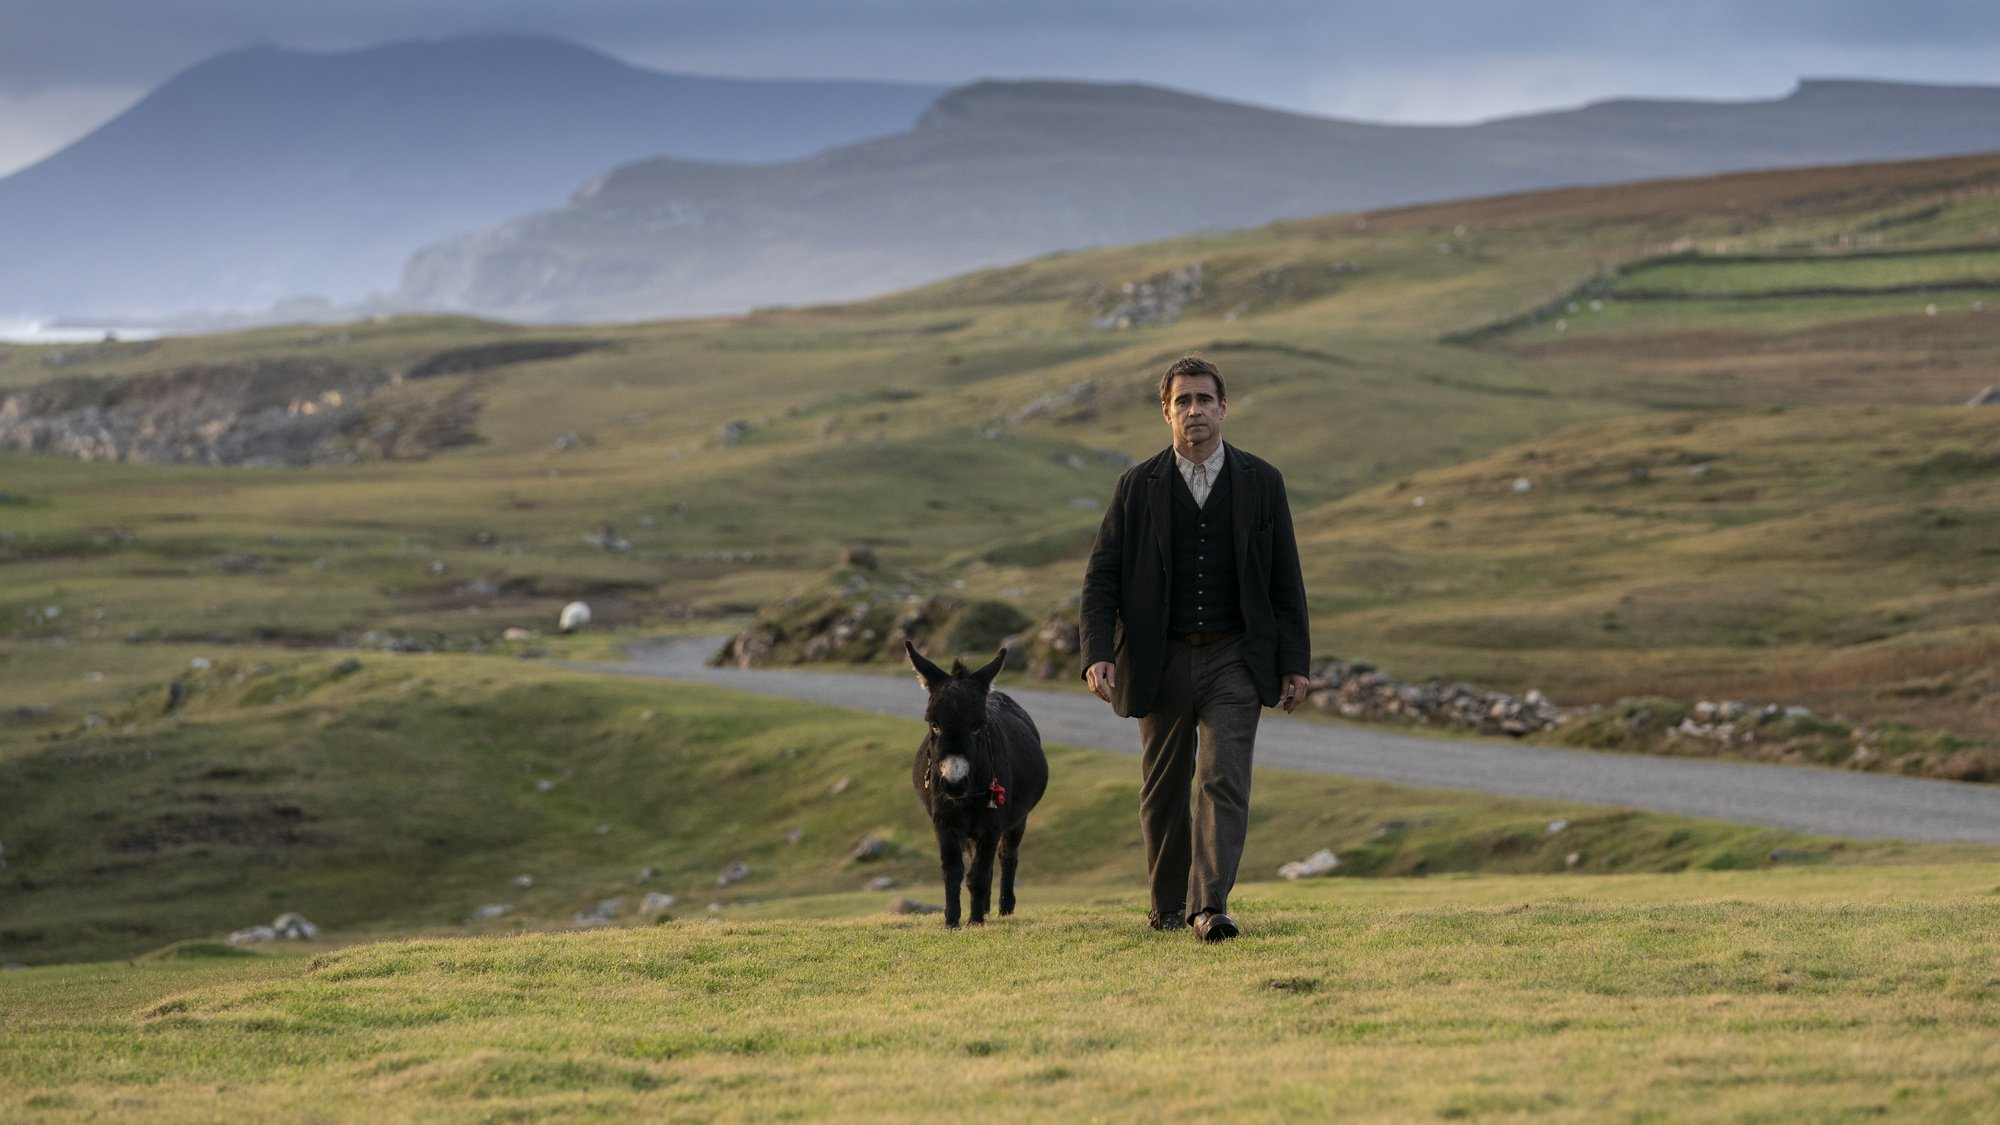 'The Banshees of Inisherin' Colin Farrell as Pádraic Súilleabháin walking alongside a donkey in a green field